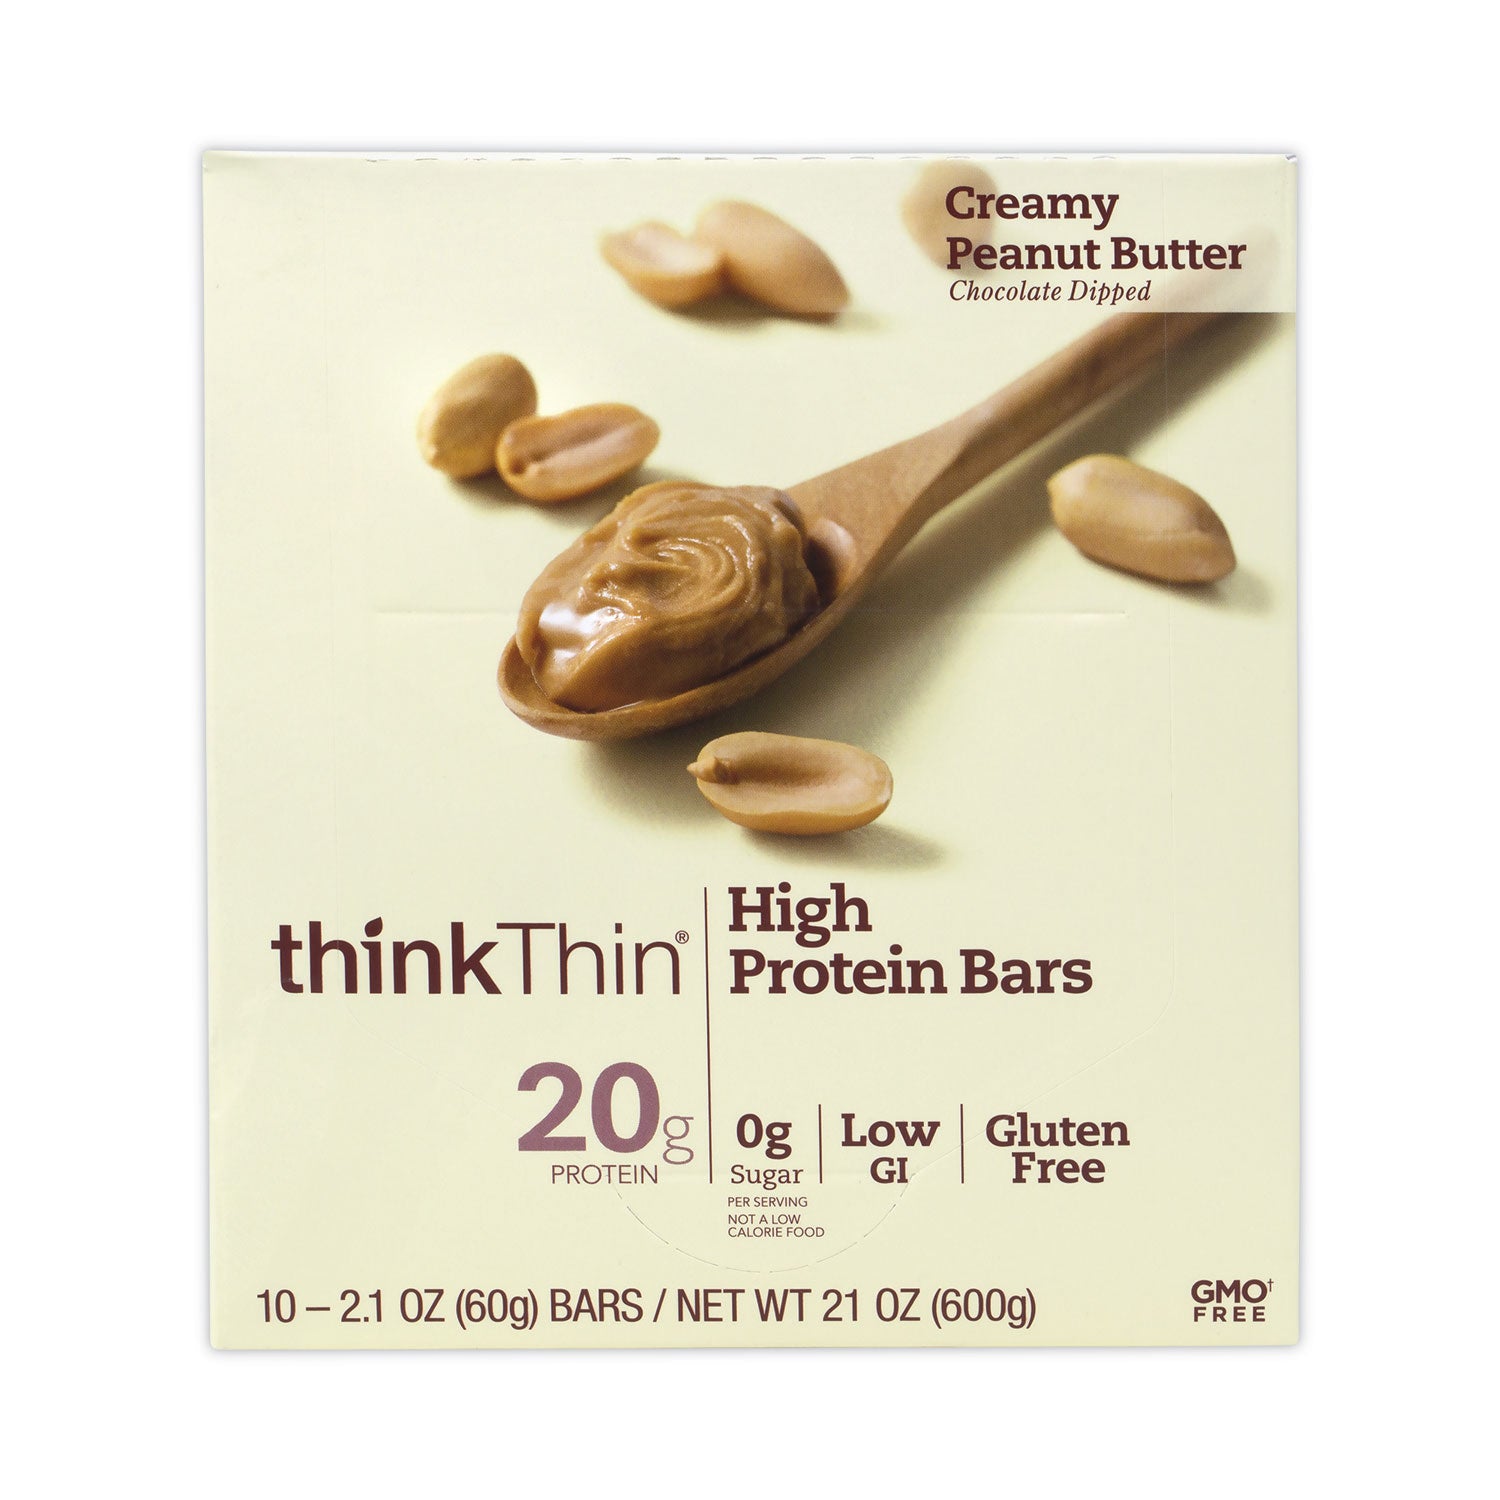 high-protein-bars-creamy-peanut-butter-21-oz-bar-10-bars-carton-ships-in-1-3-business-days_grr30700113 - 1